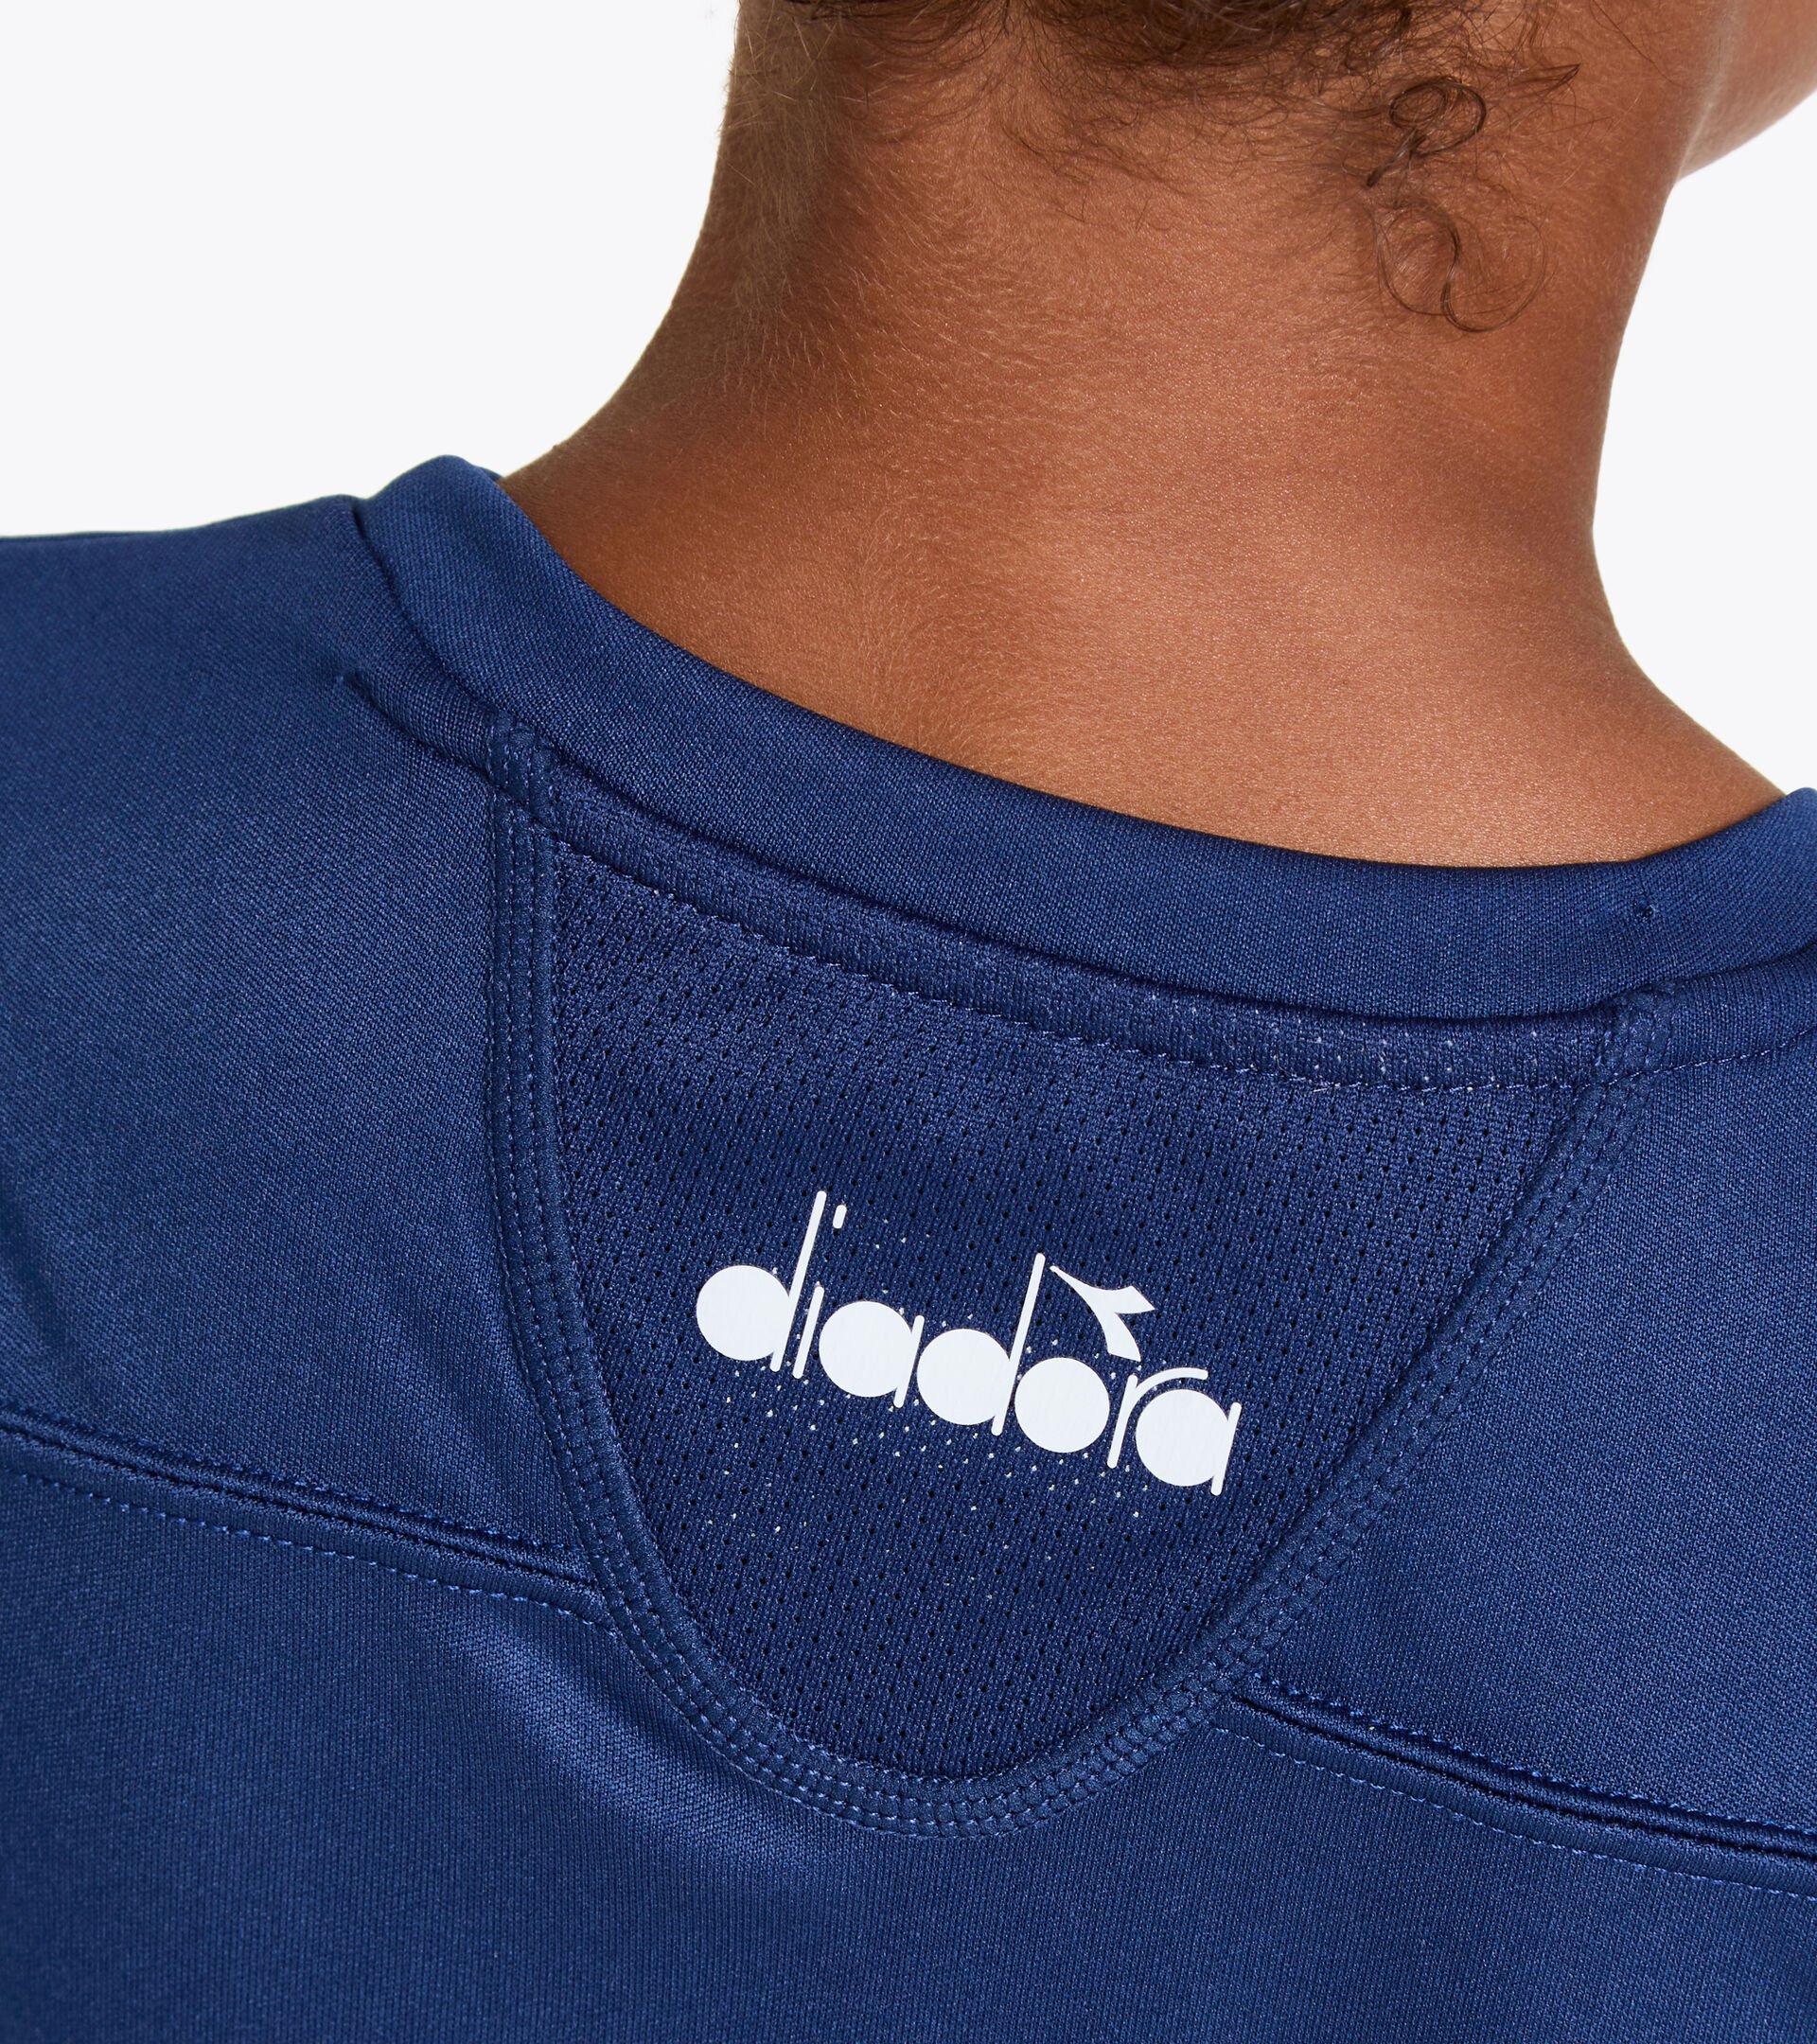 Tennis-T-Shirt - Junior G. T-SHIRT TEAM GUTBLAU - Diadora